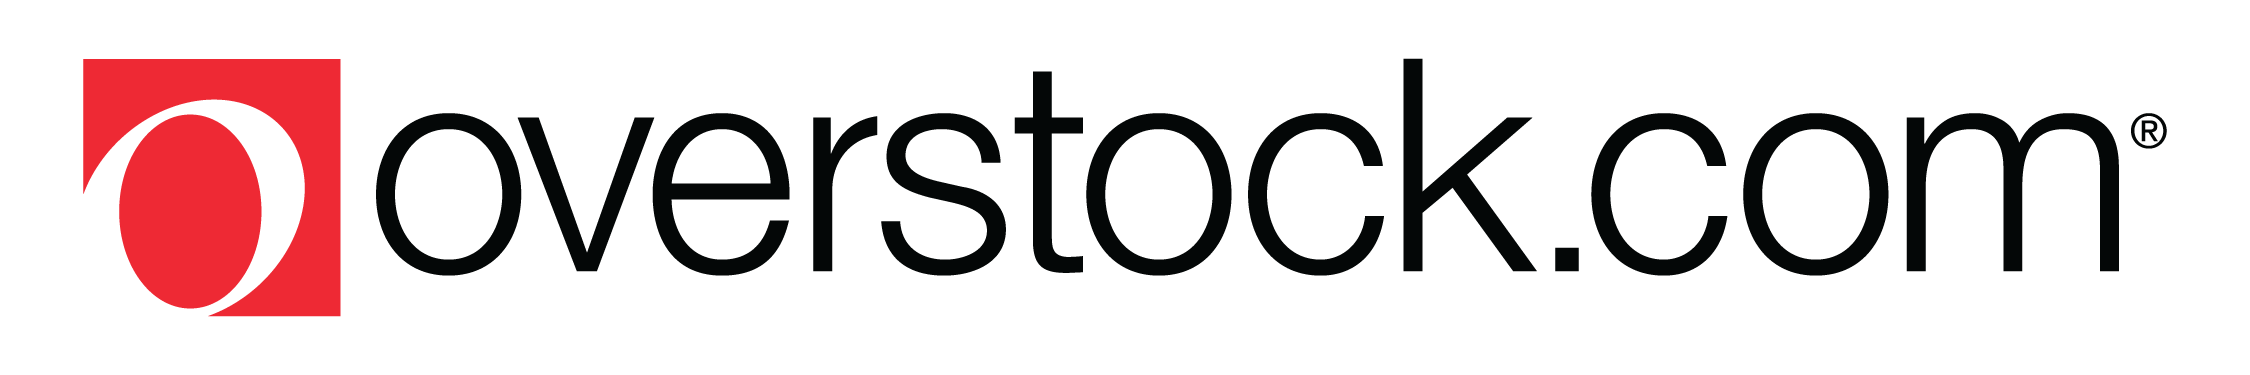 Overstock Logo - Press Release - Overstock.com